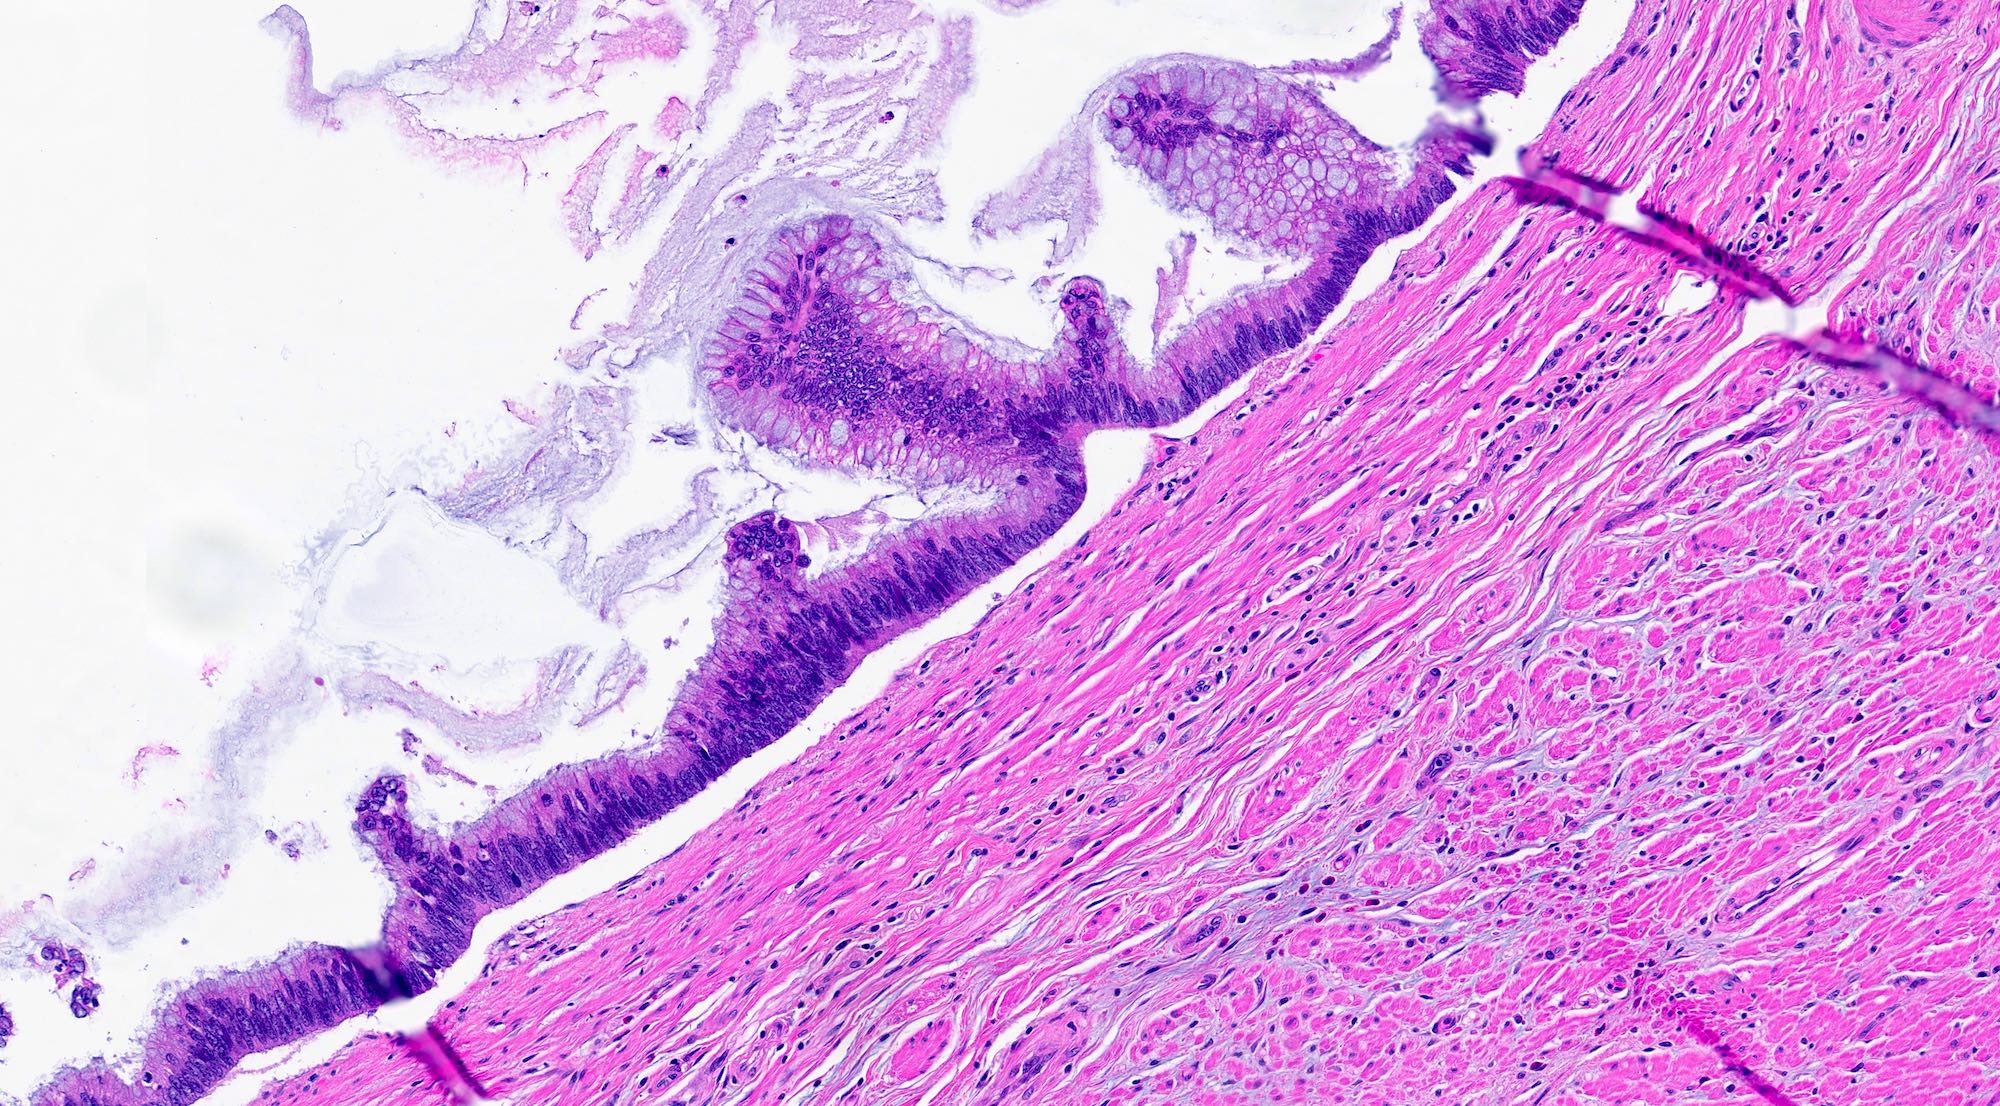 Appendiceal mucinous neoplasm